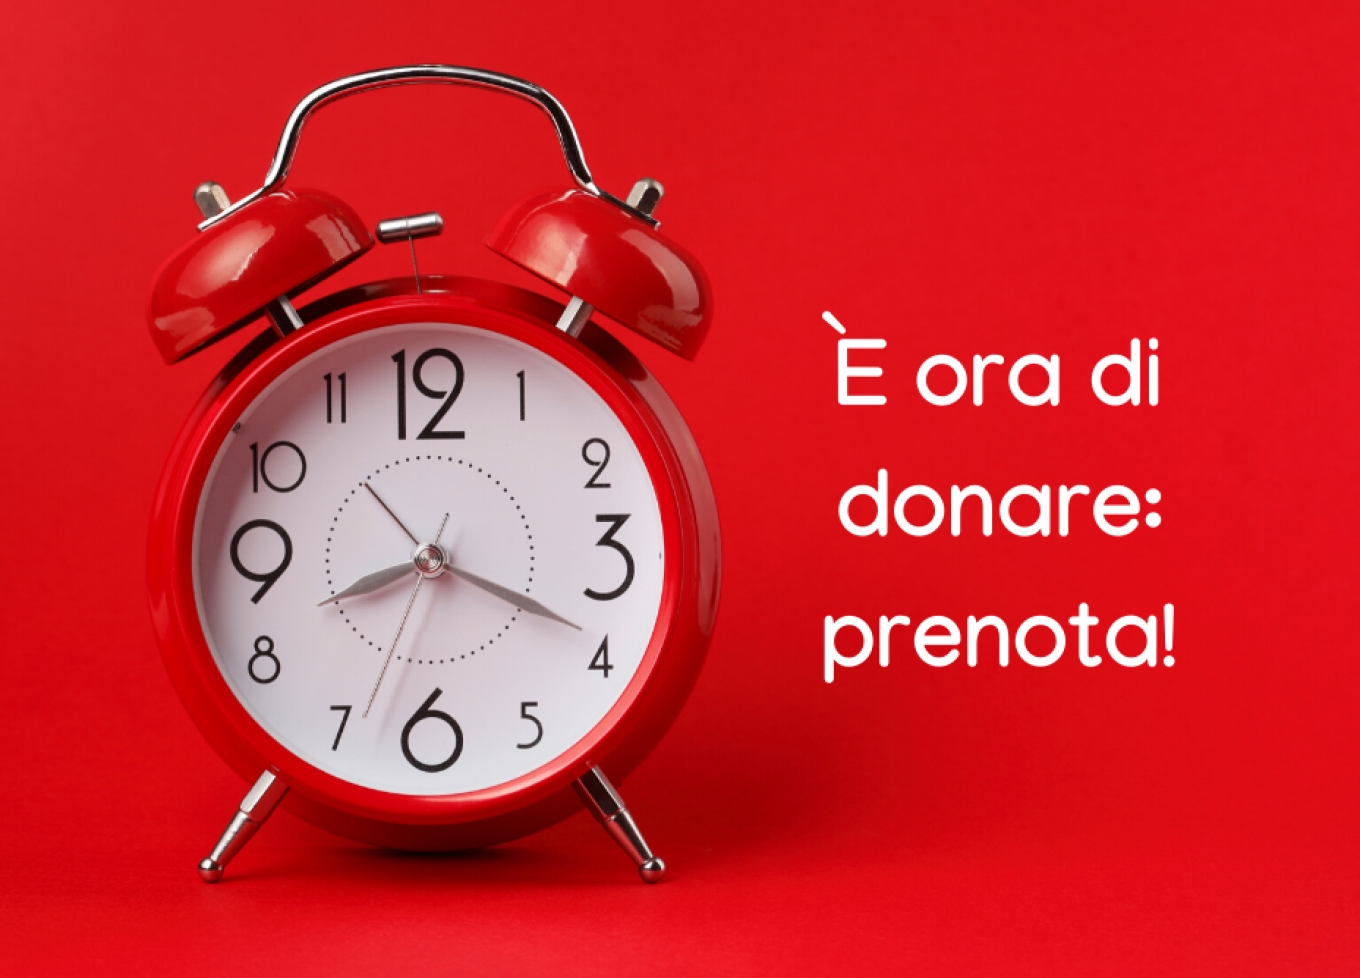 Avis Genzano, Vivere Impresa sostiene l’appello a donare sangue